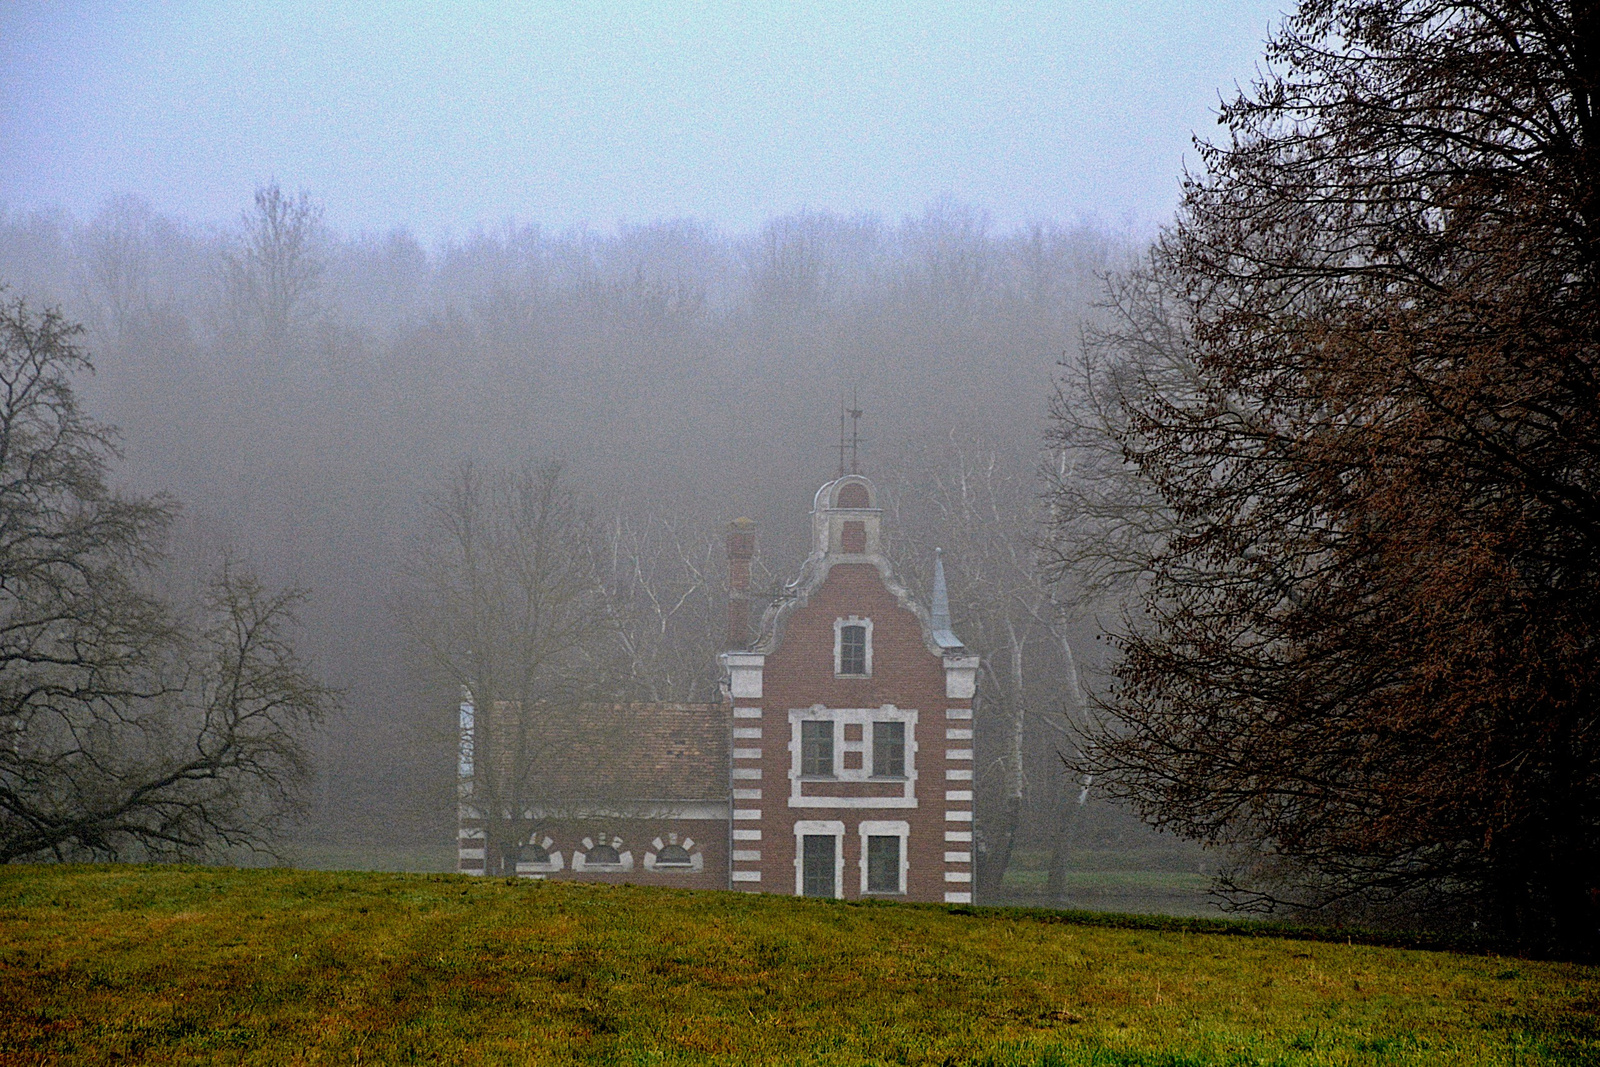 Hollandi ház - ködben